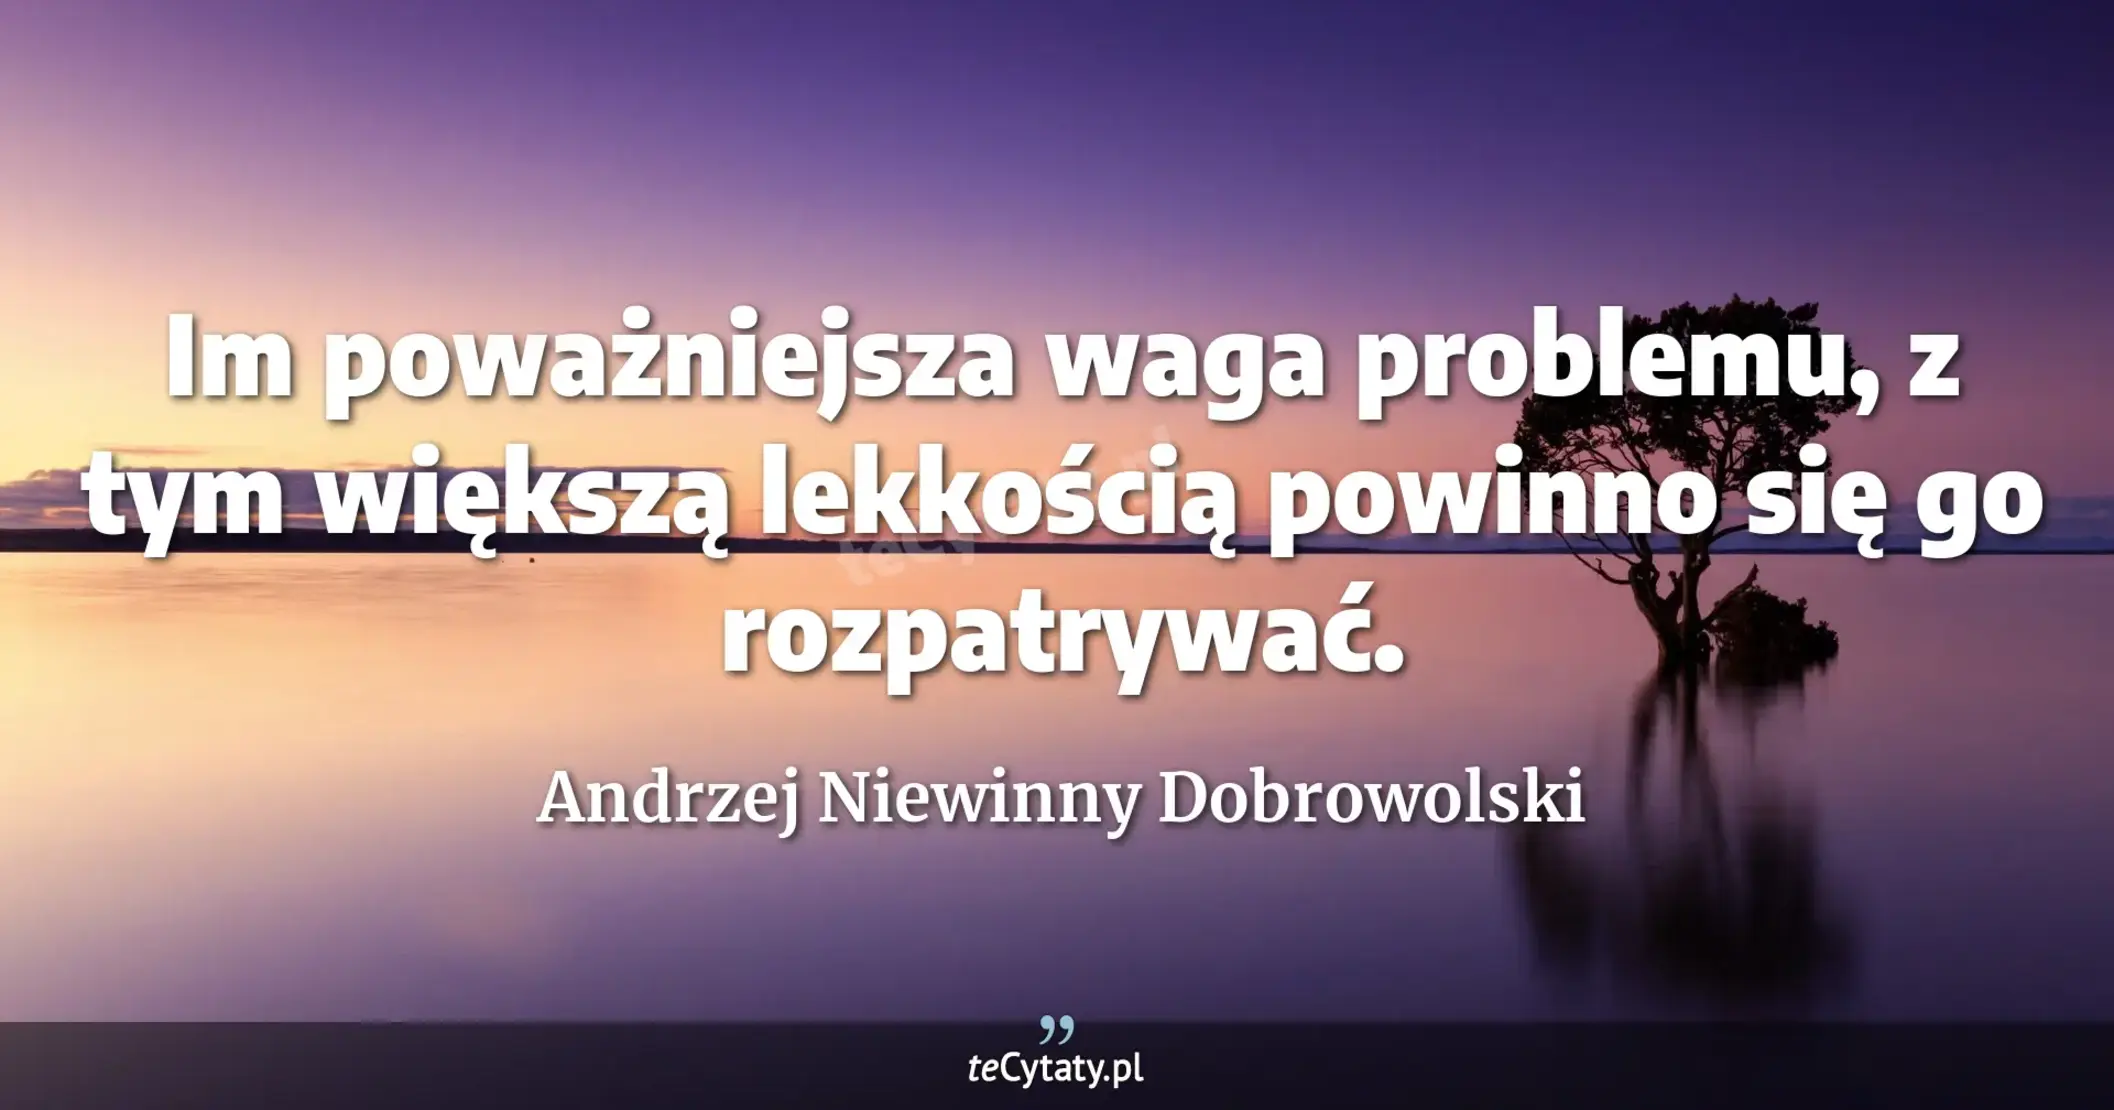 Im poważniejsza waga problemu, z tym większą lekkością powinno się go rozpatrywać. - Andrzej Niewinny Dobrowolski